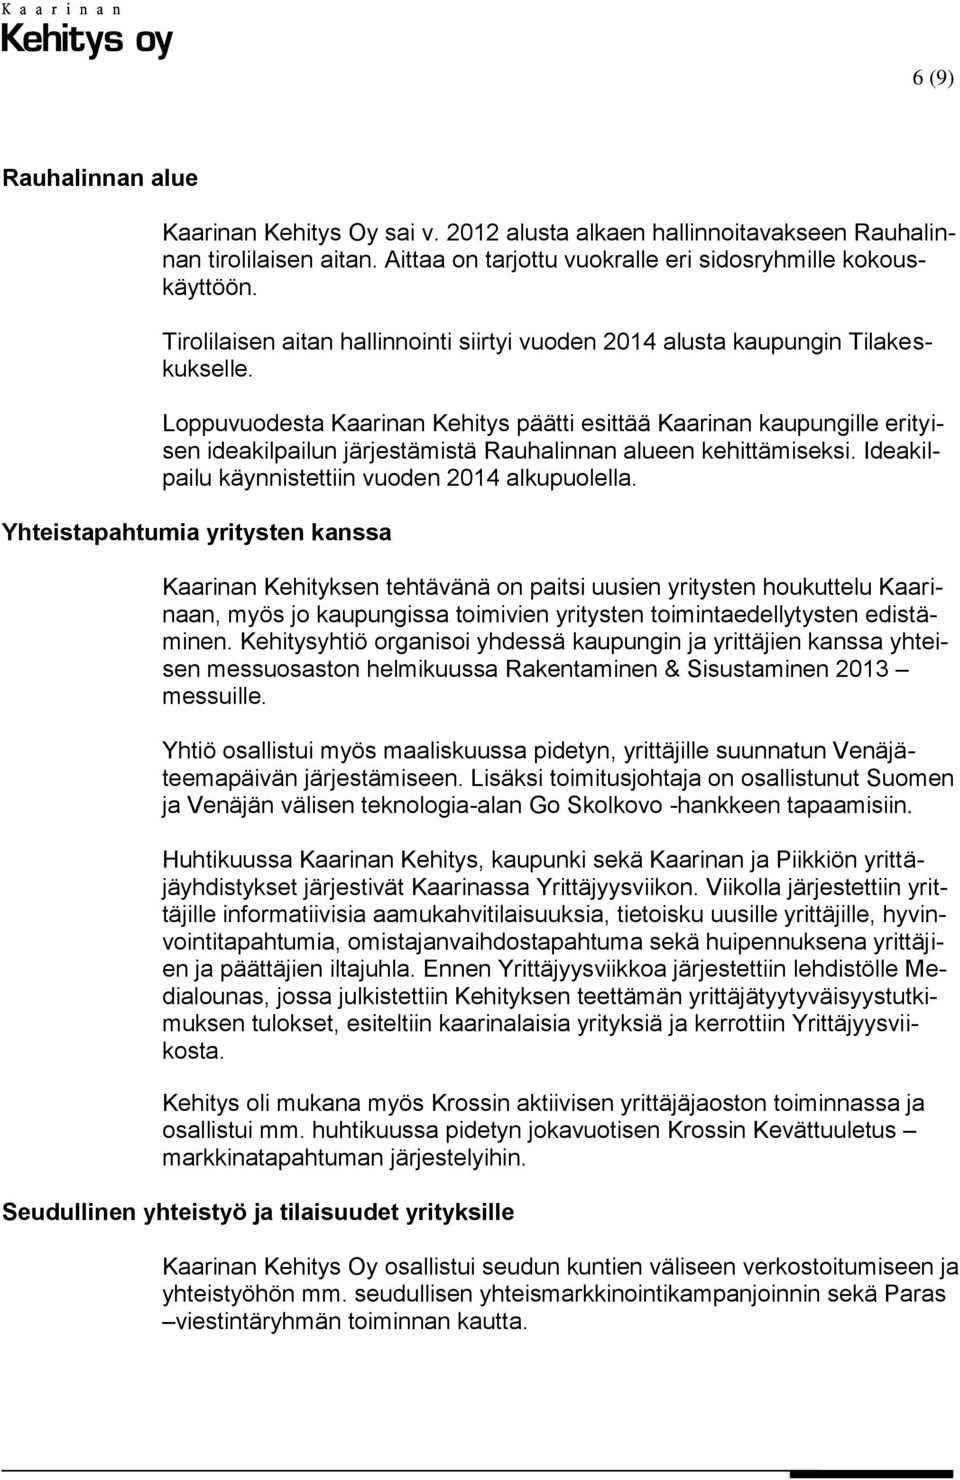 Loppuvuodesta Kaarinan Kehitys päätti esittää Kaarinan kaupungille erityisen ideakilpailun järjestämistä Rauhalinnan alueen kehittämiseksi. Ideakilpailu käynnistettiin vuoden 2014 alkupuolella.